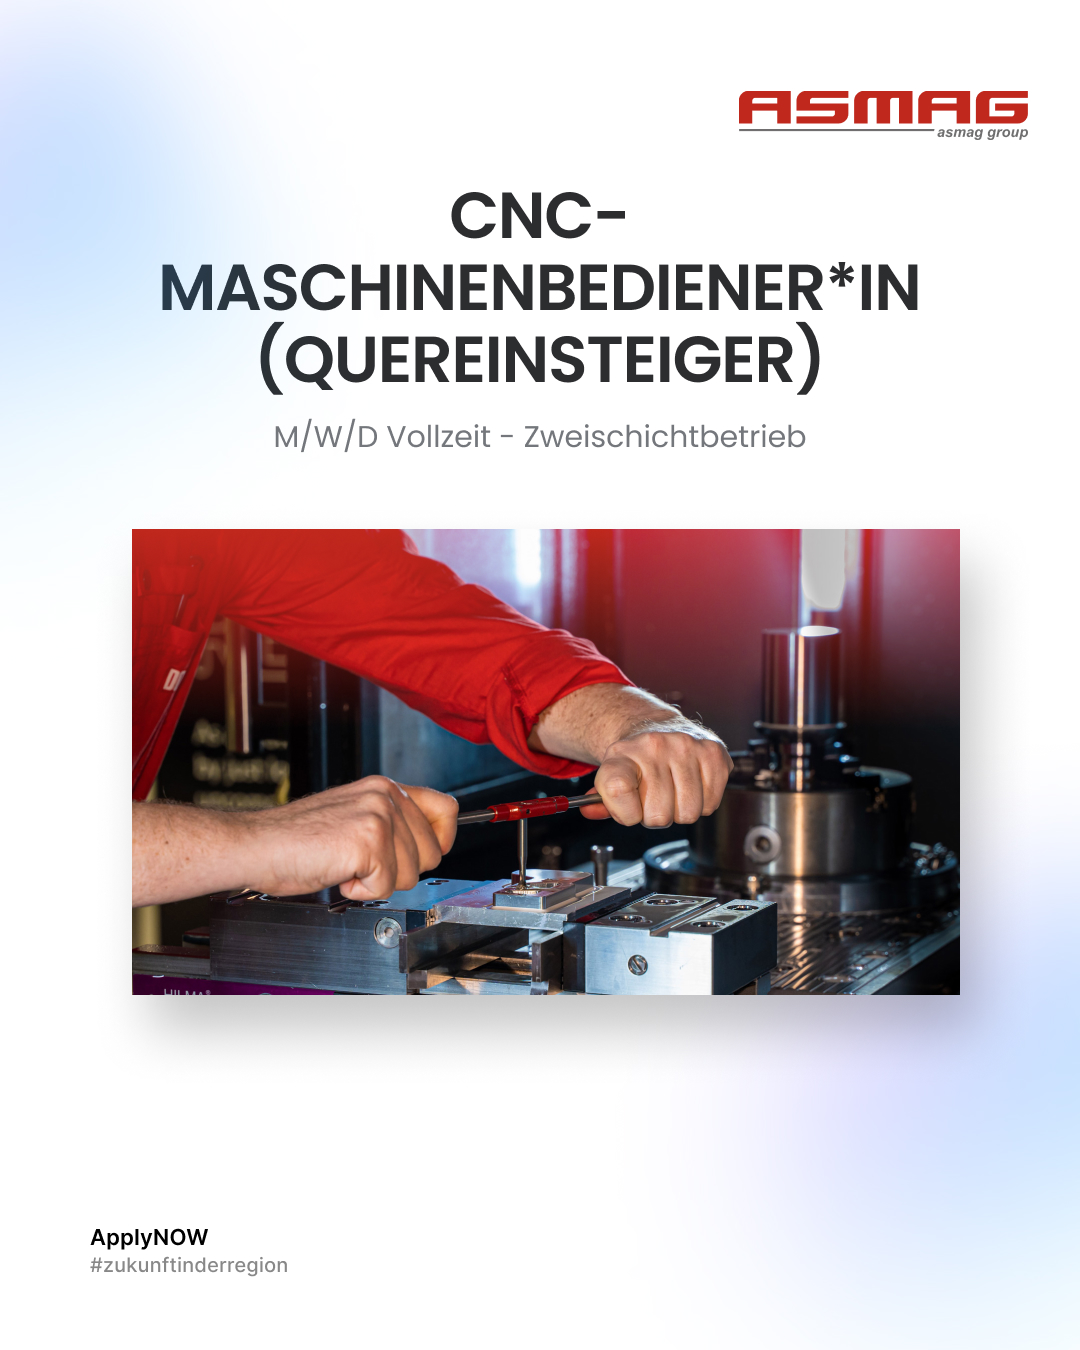 CNC Maschinenbediener - Quereinsteiger